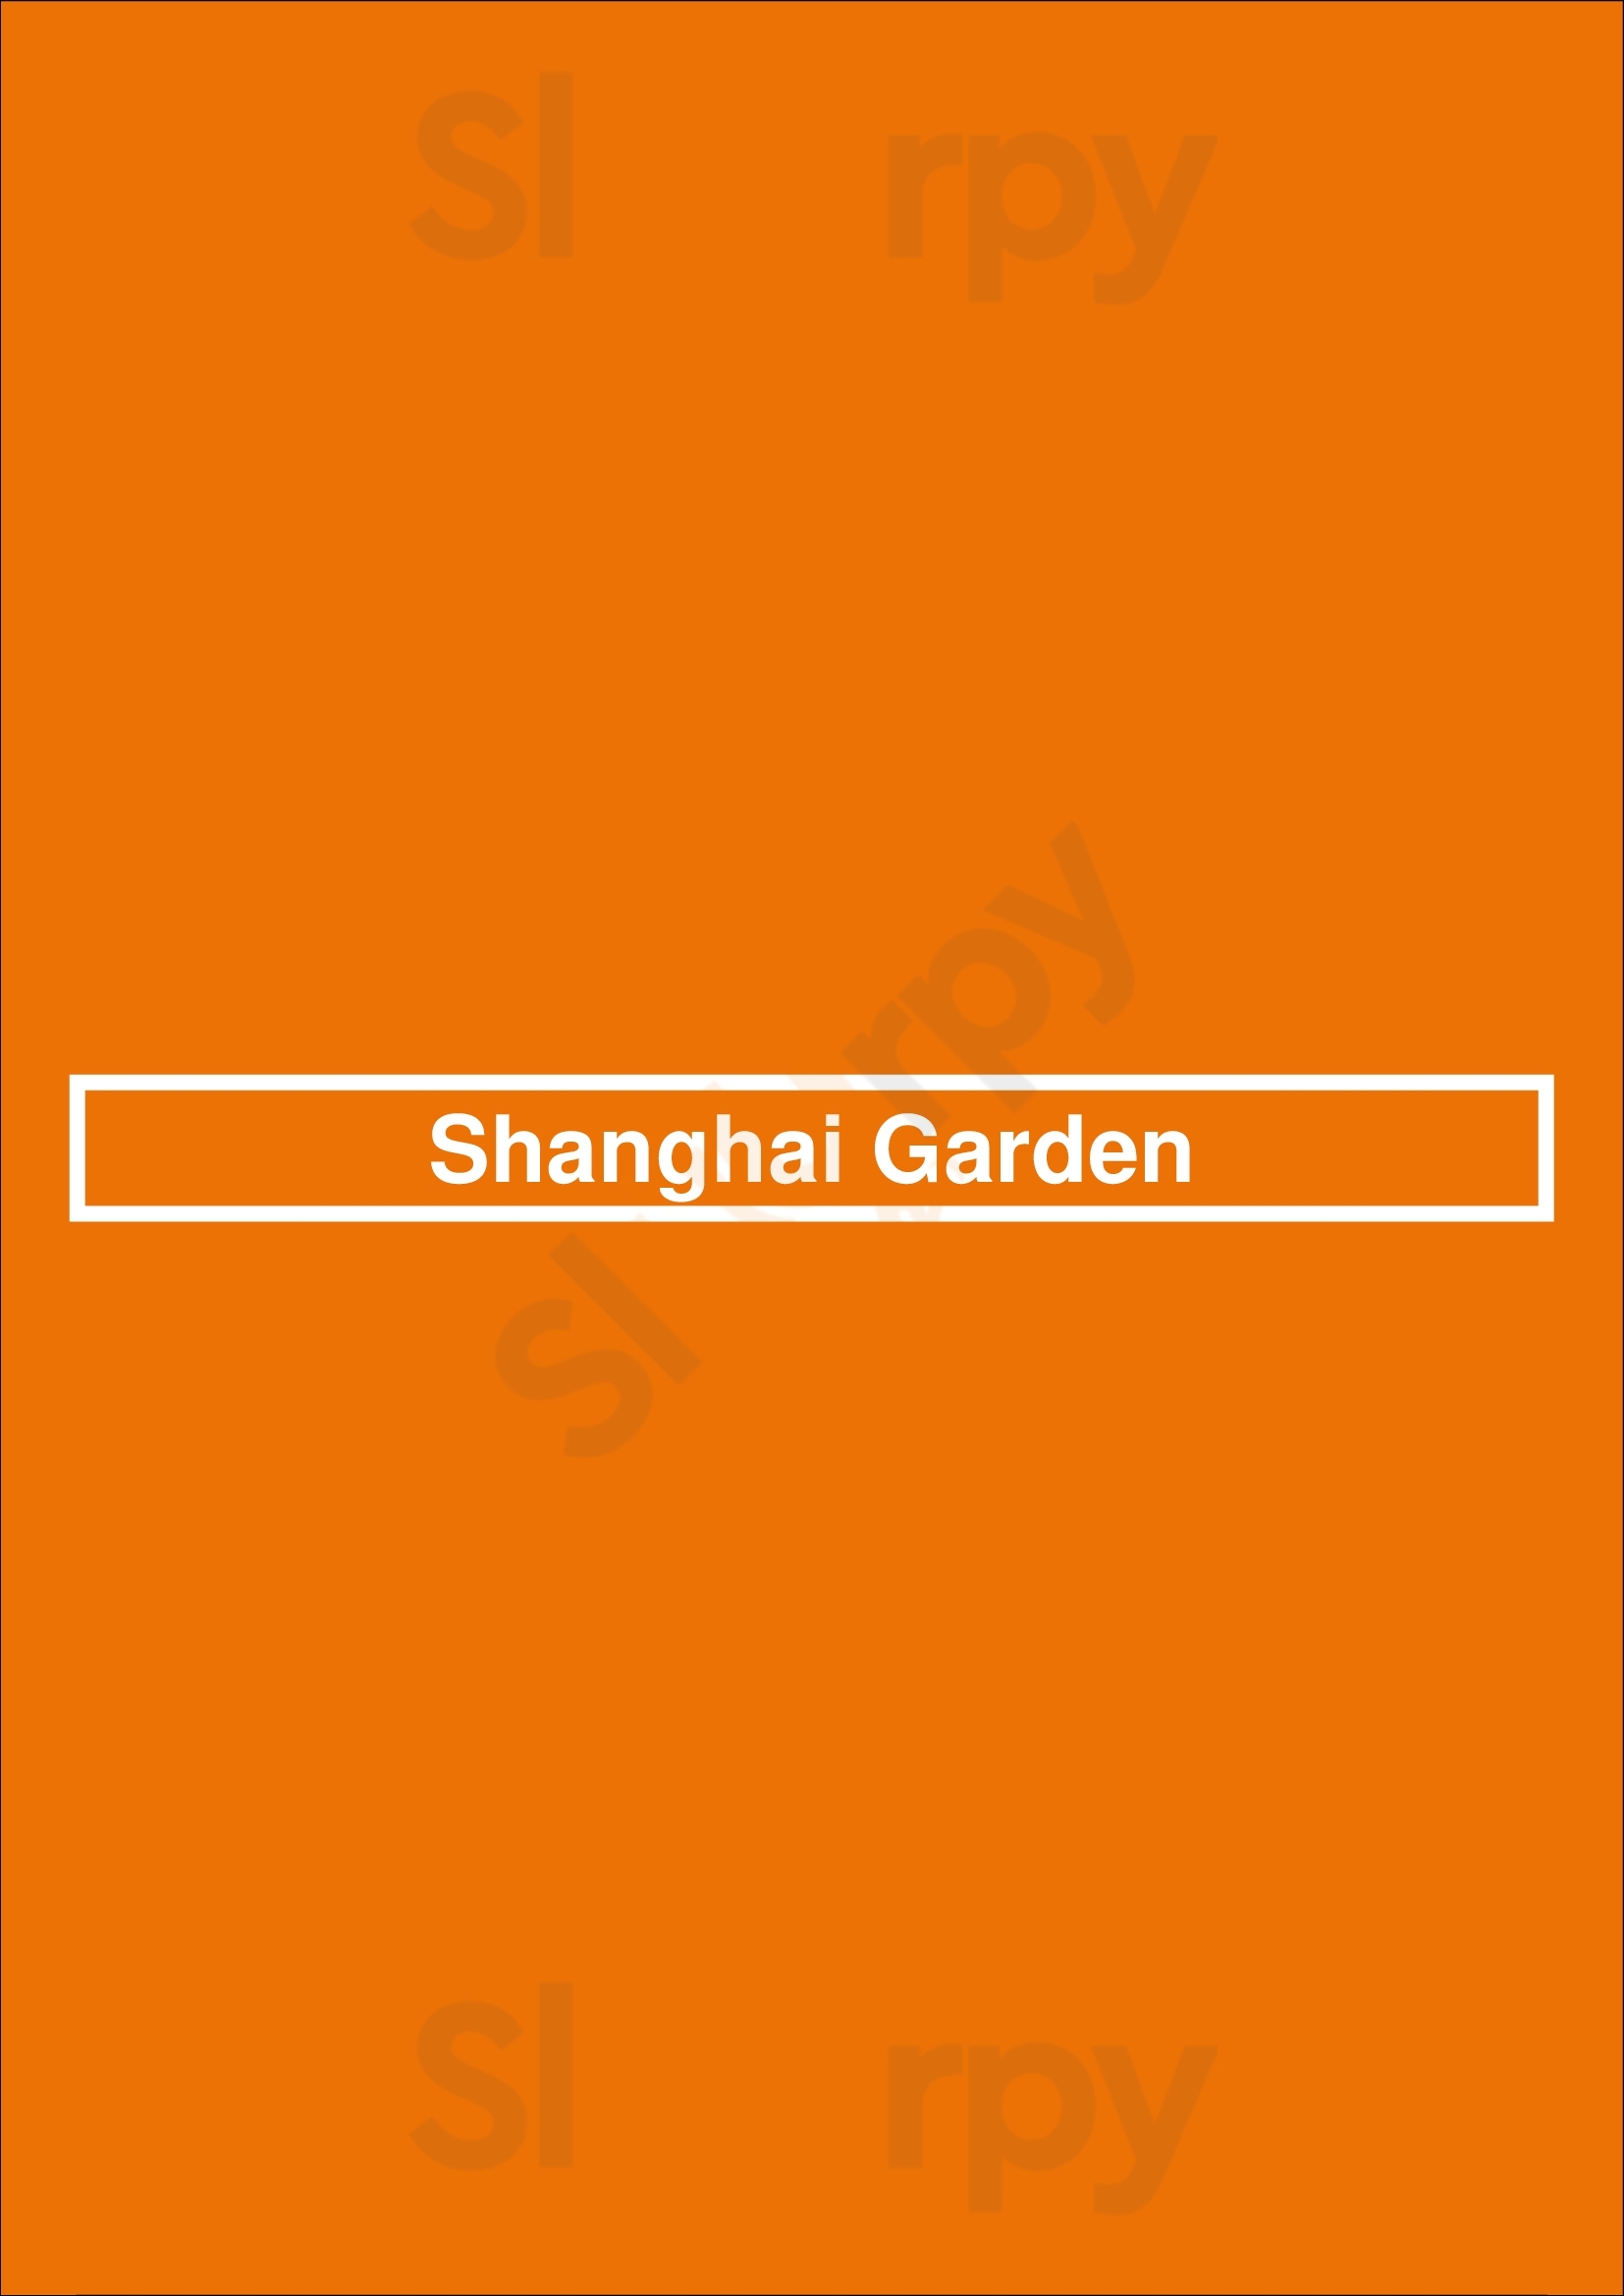 Shanghai Garden Sacramento Menu - 1